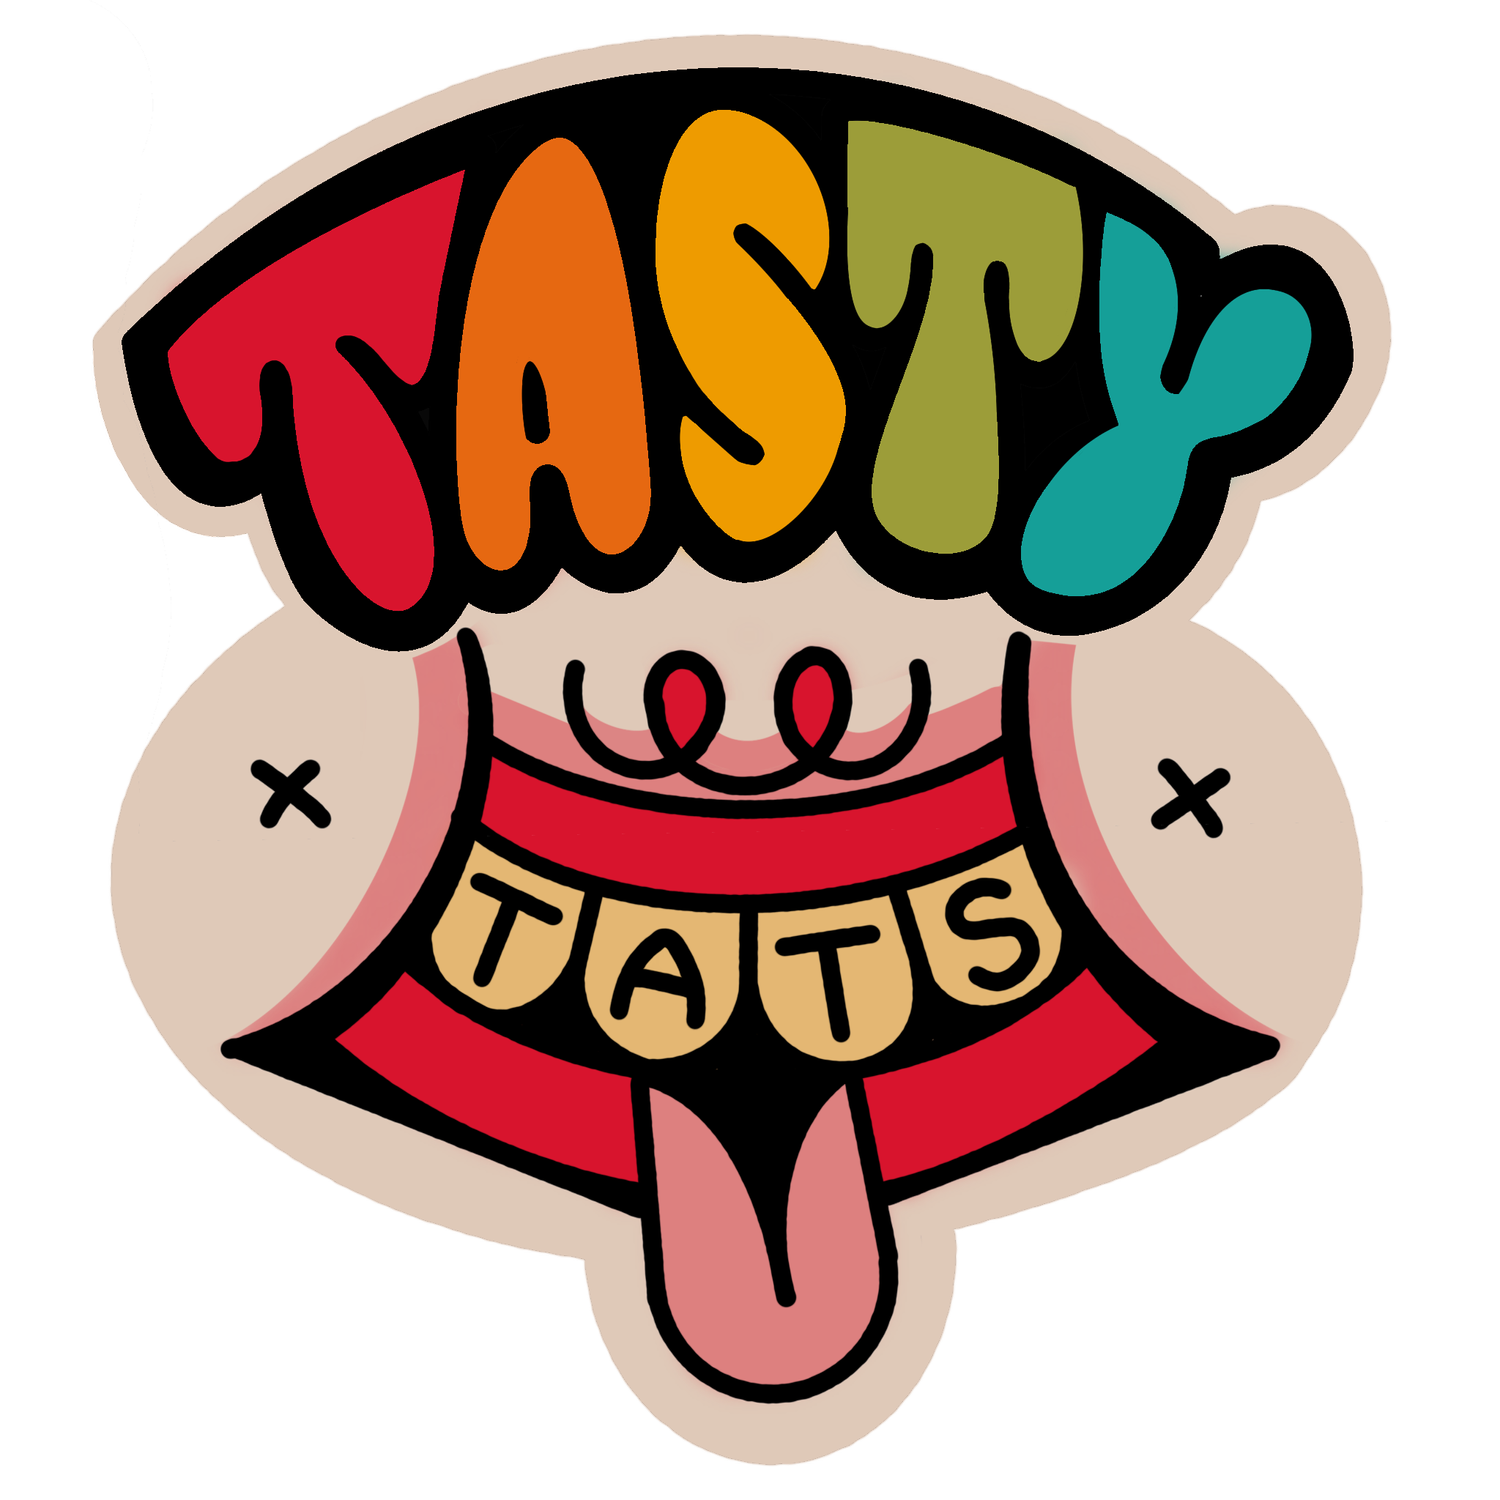 Tasty Tats